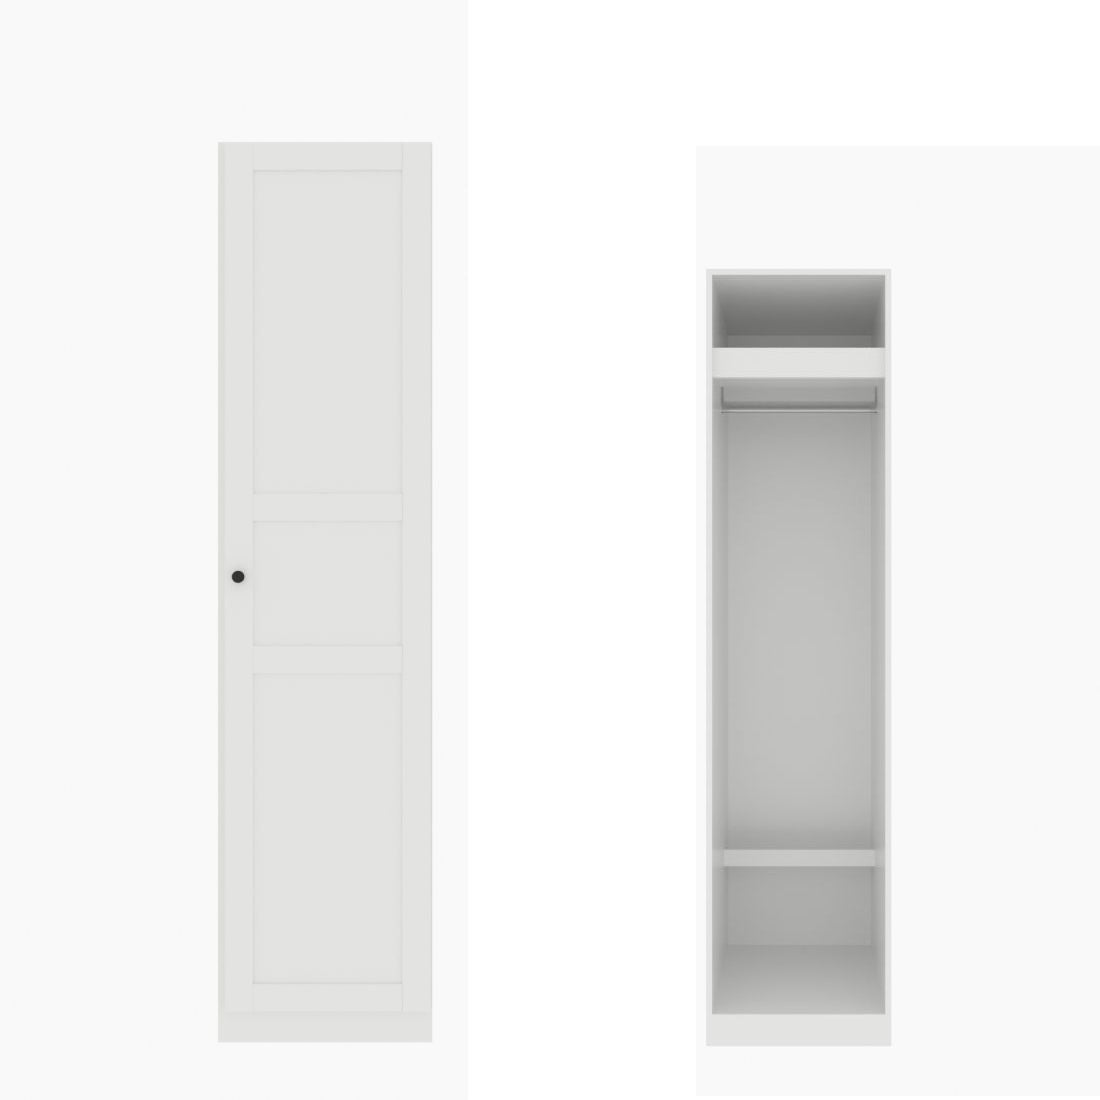 ตู้เสื้อผ้า ราวแขวนโล่ง OP-J (หน้าบานเปิดขวา) ขนาด 50 ซม. รุ่น Blox สีขาว01